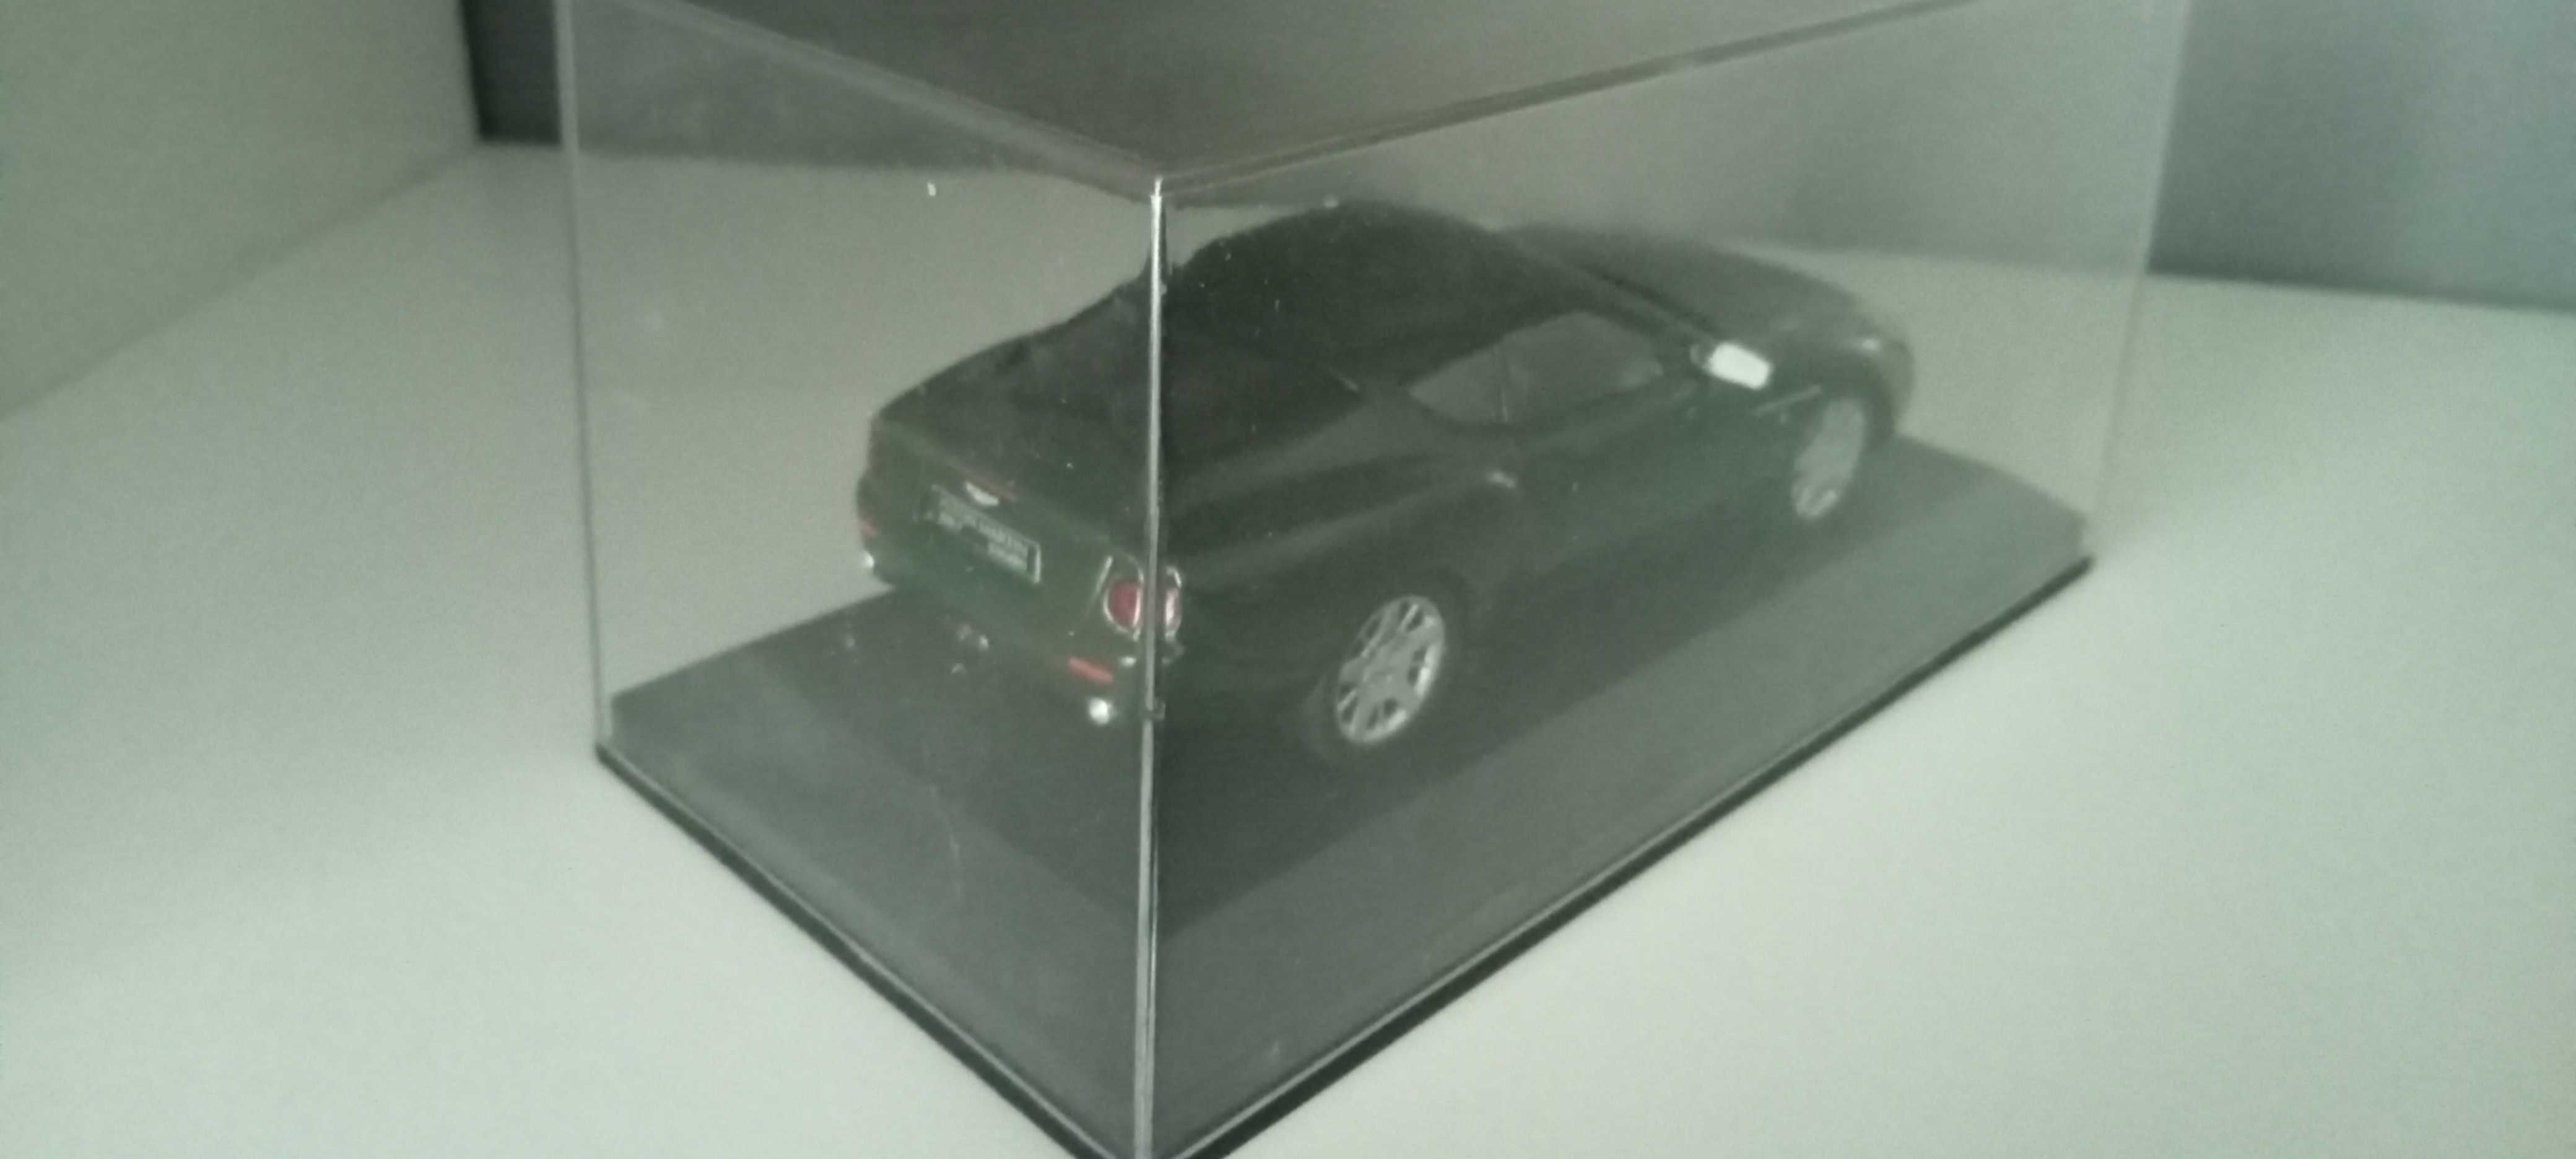 Miniaturas Aston Martin 1:43